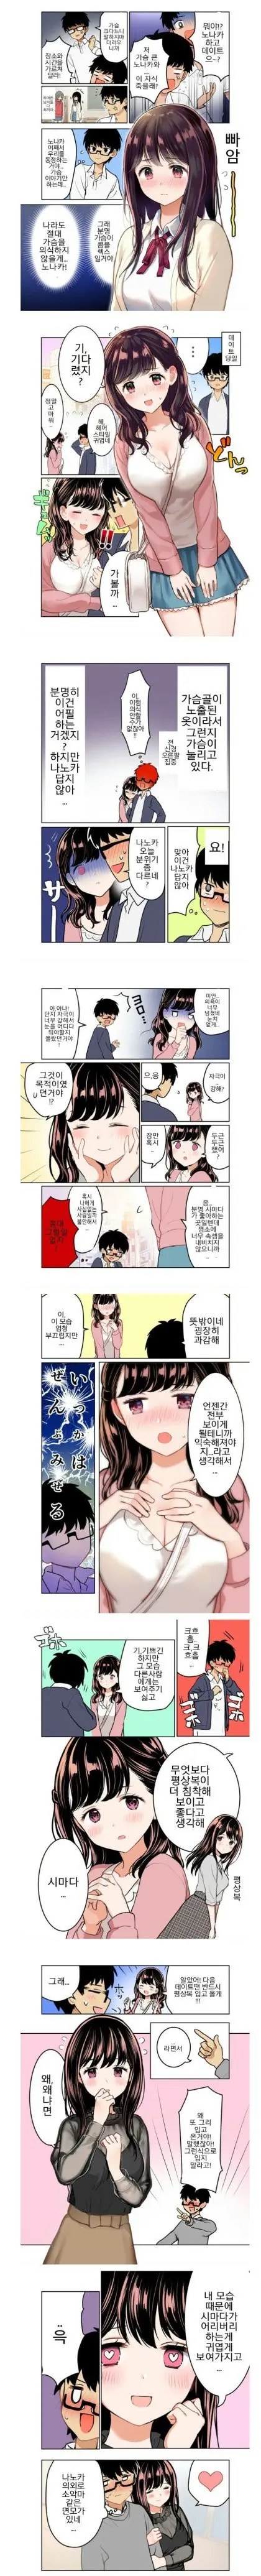 가슴 큰 여자가 여우짓하는 만화.manhwa | mbong.kr 엠봉